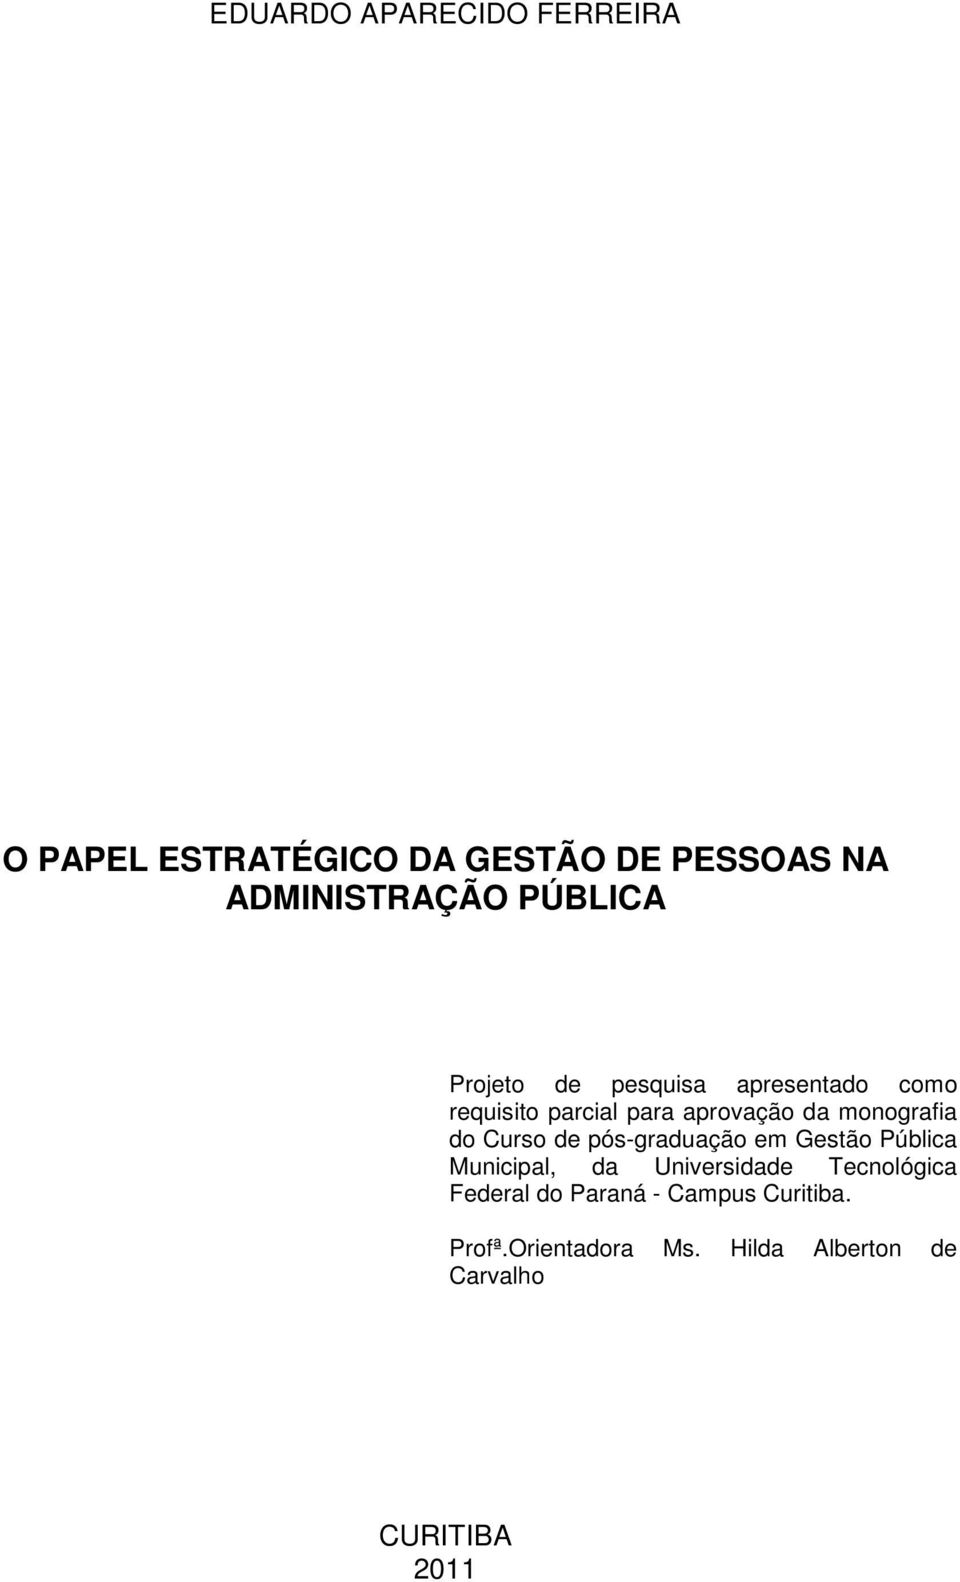 monografia do Curso de pós-graduação em Gestão Pública Municipal, da Universidade